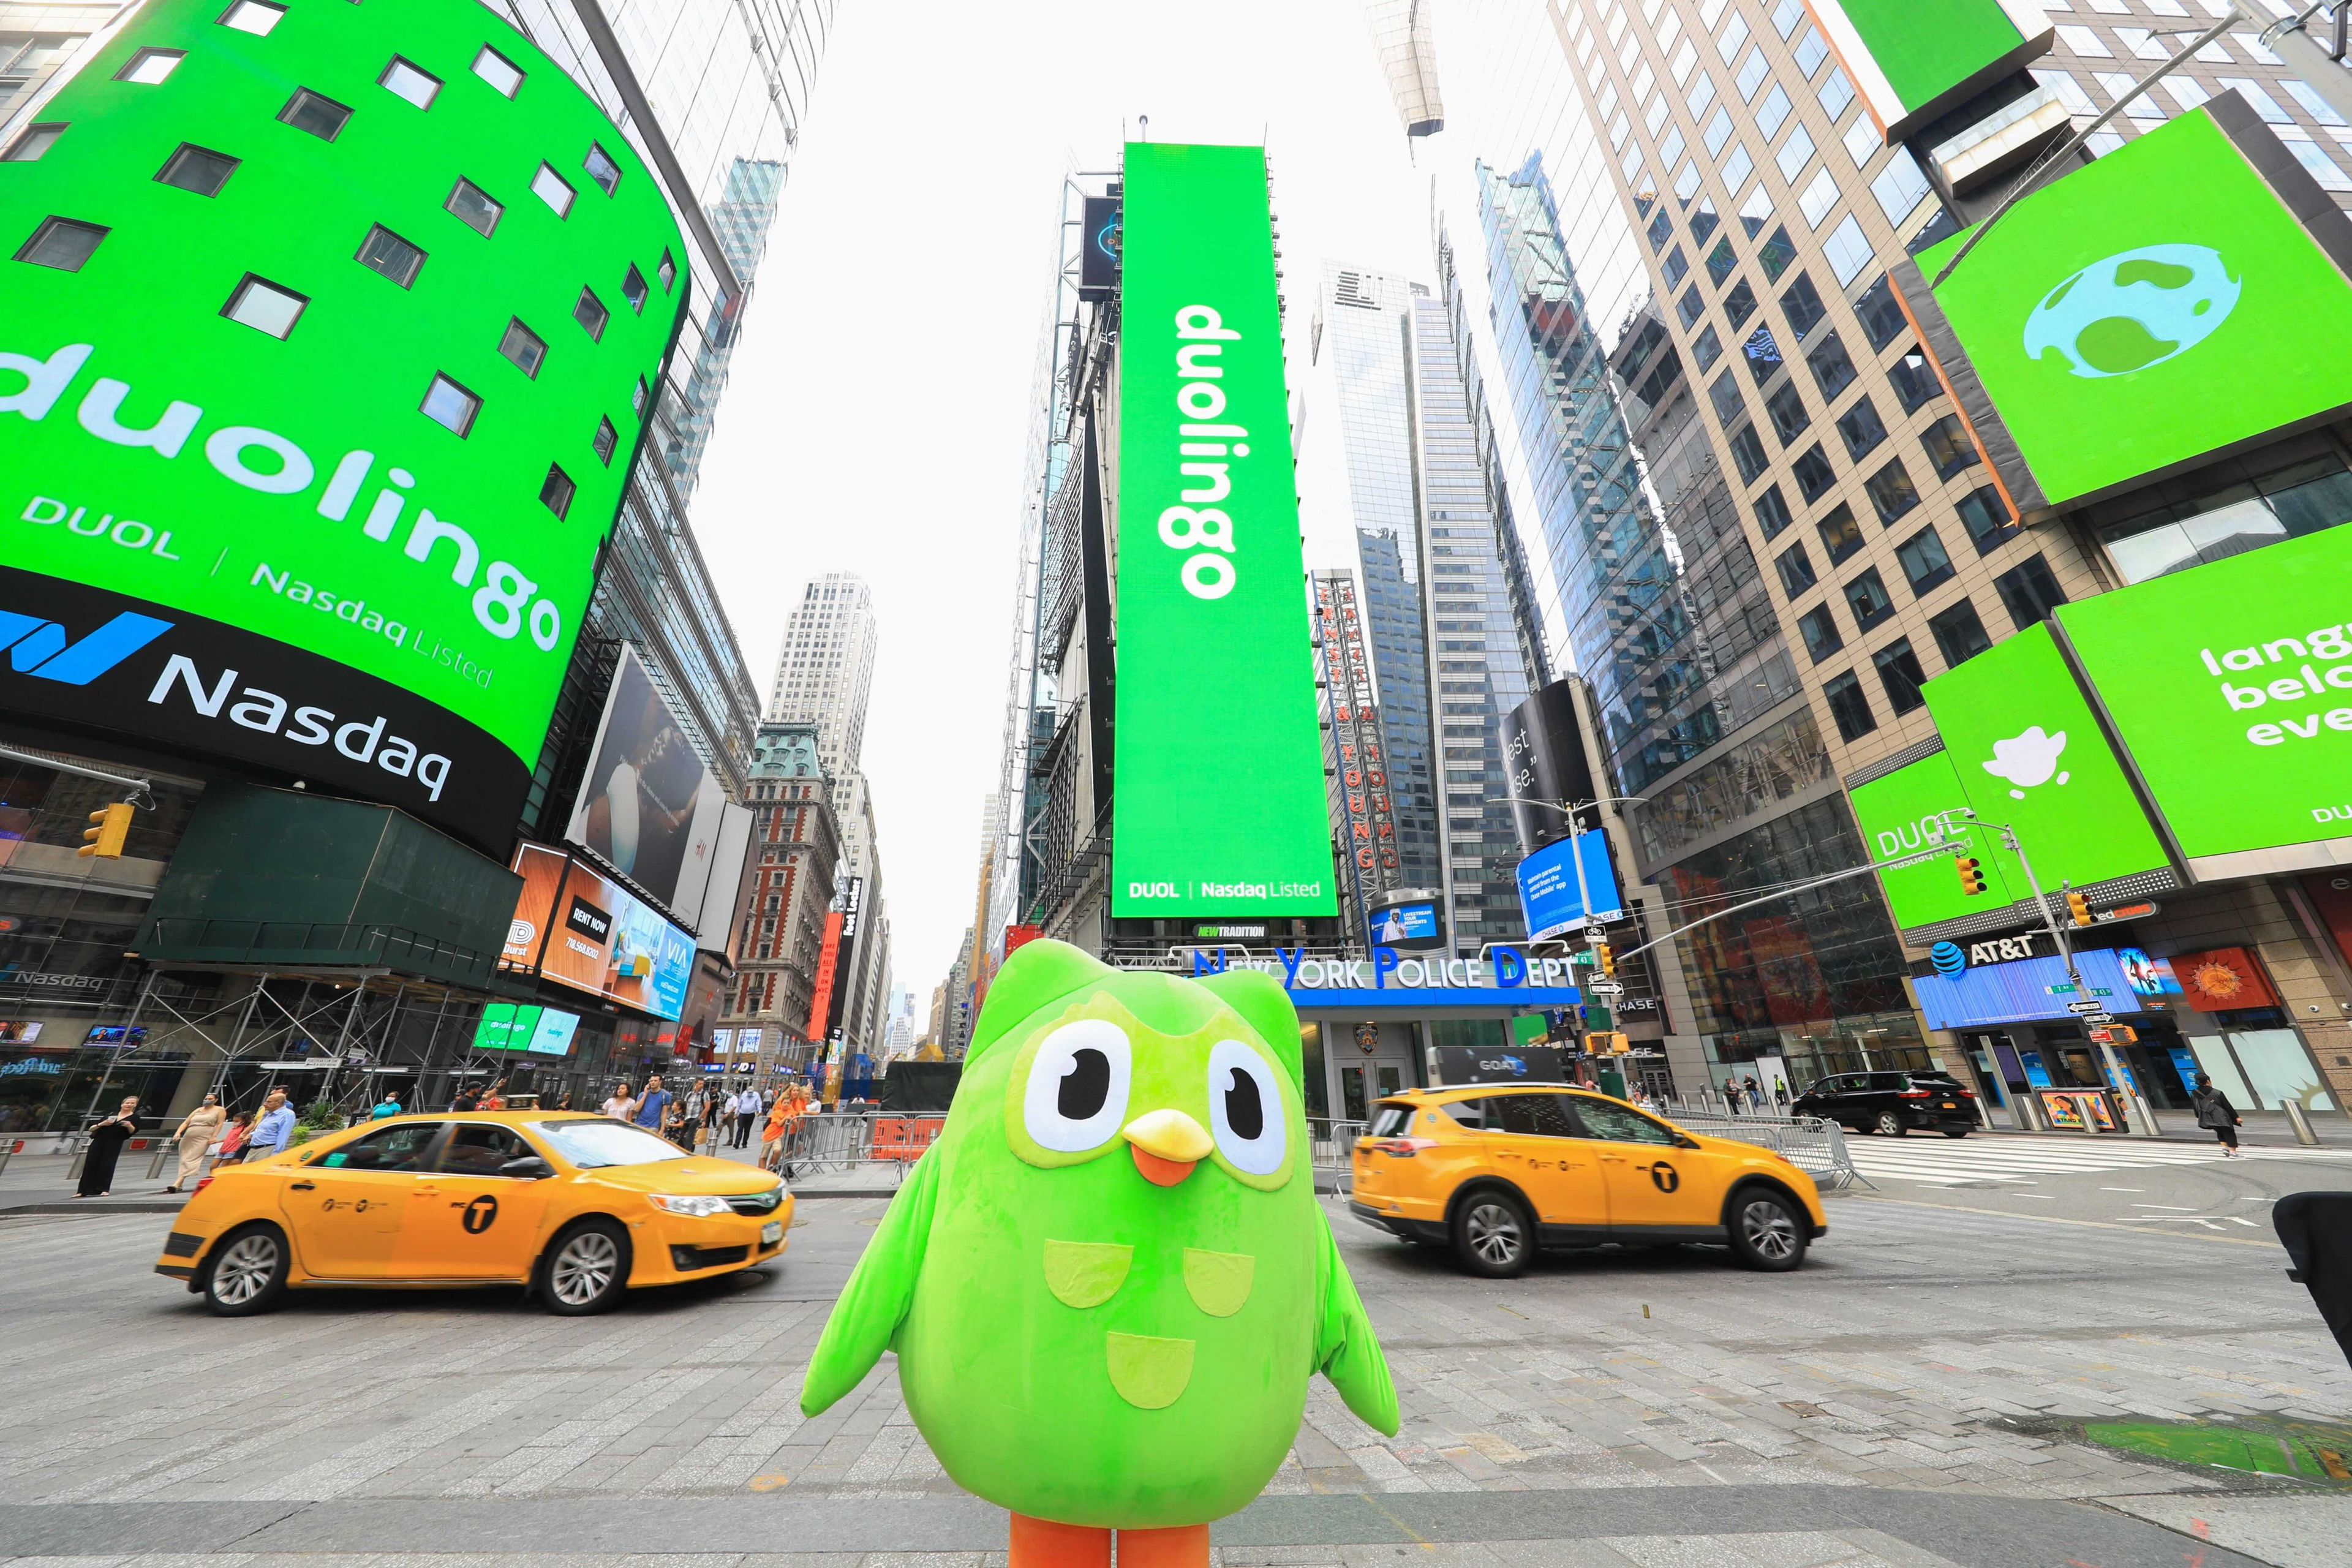 Campaña de Duolingo para promocionar su salida a bolsa. Duolingo